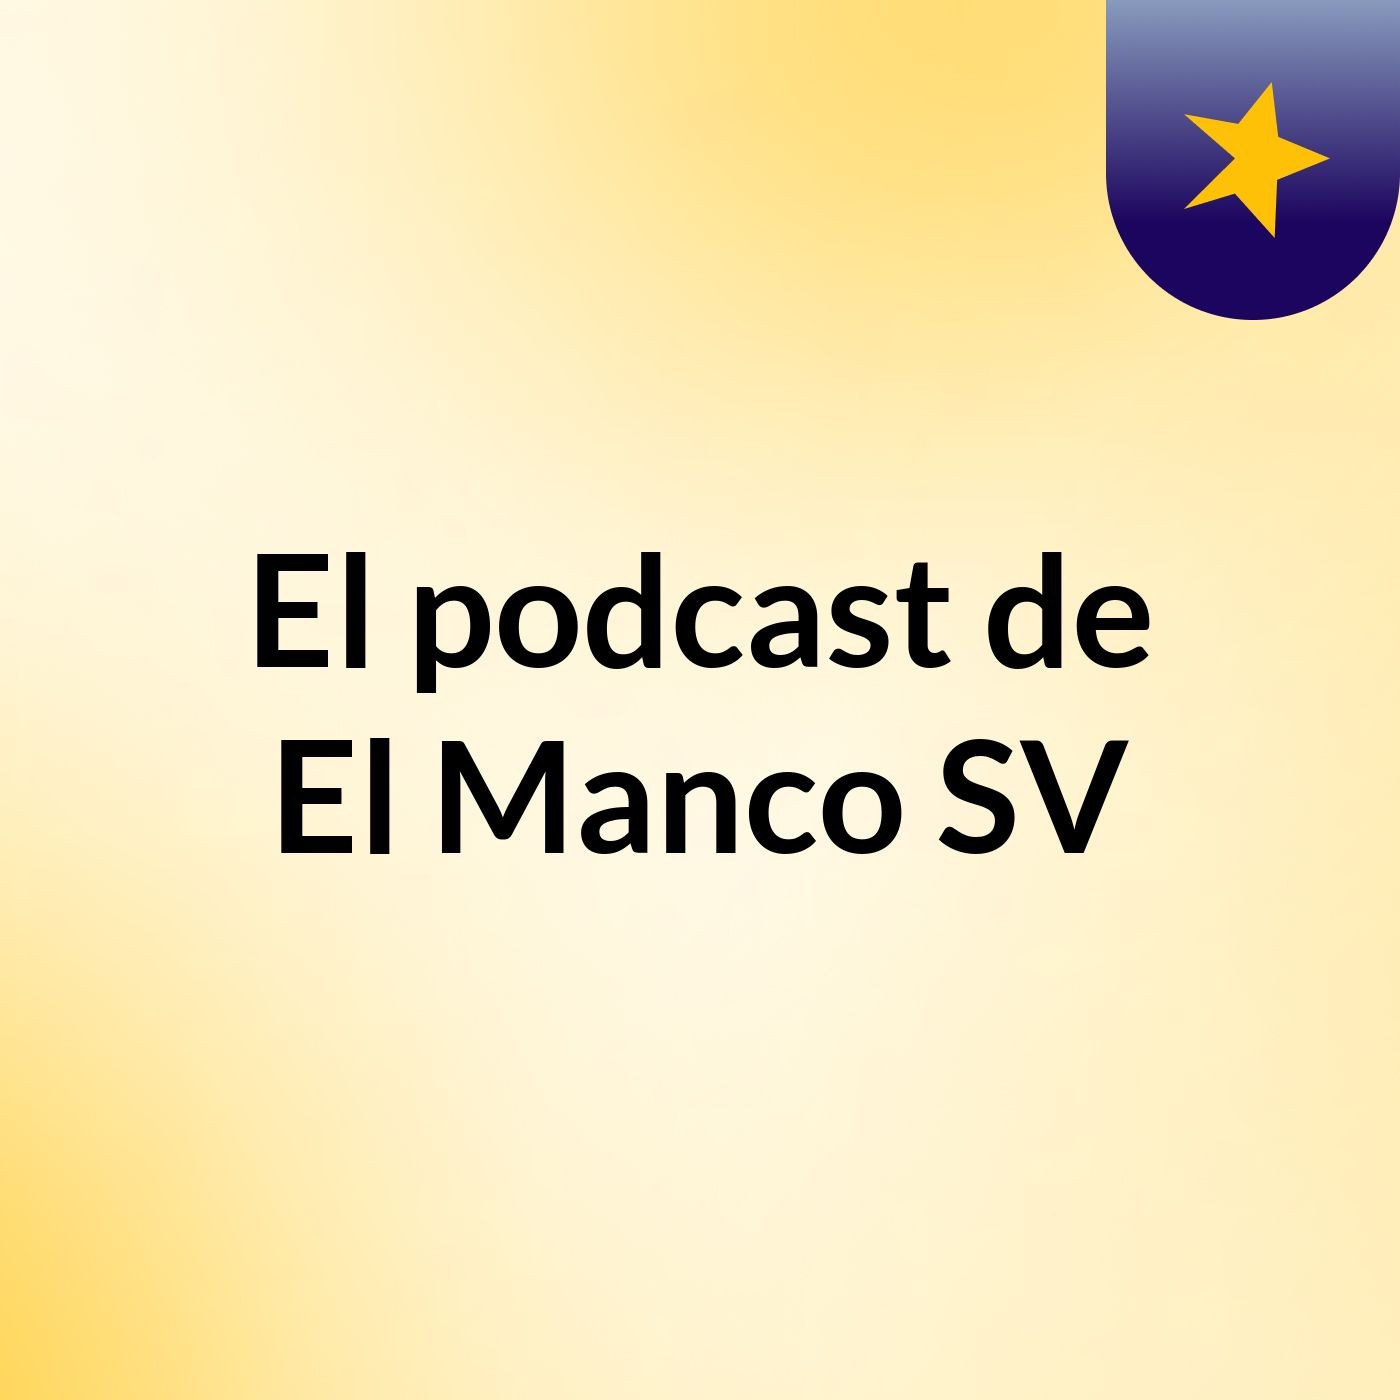 El podcast de El Manco SV